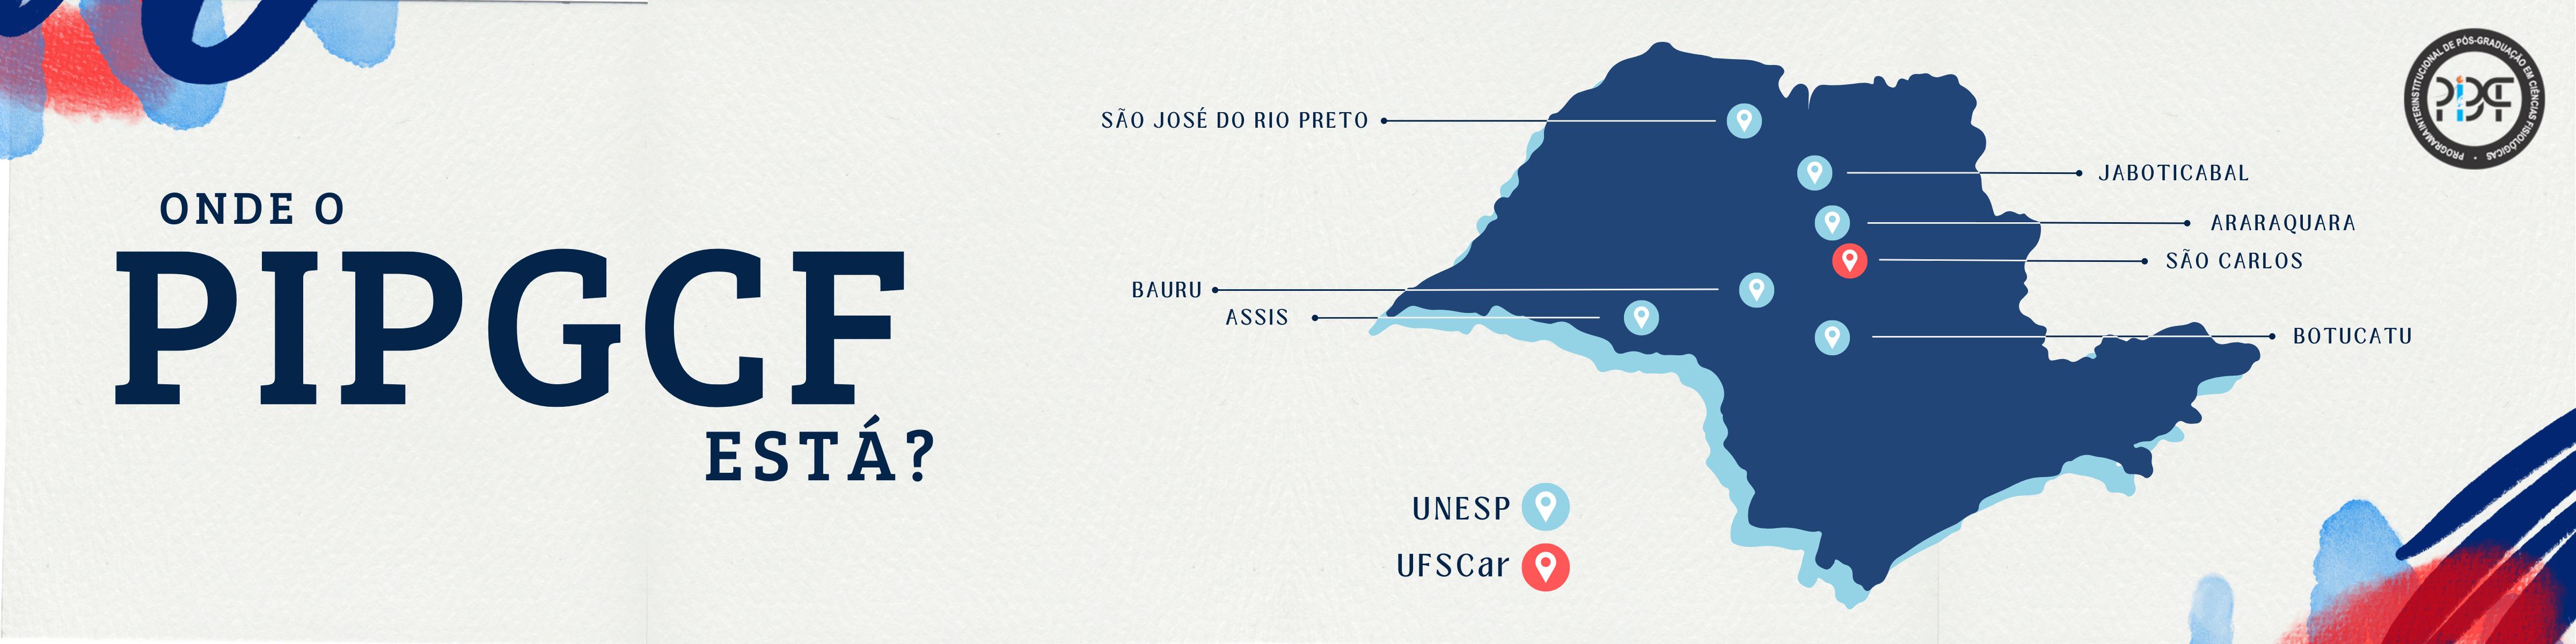 Nesta imagem aparece um mapa do Estado de São Paulo indicando as cidades onde existem orientadores credenciados no PIPGCF: São Carlos, Araraquara, Jaboticabal, Bauru, São José do Rio Preto, Araçatuba e Assis.